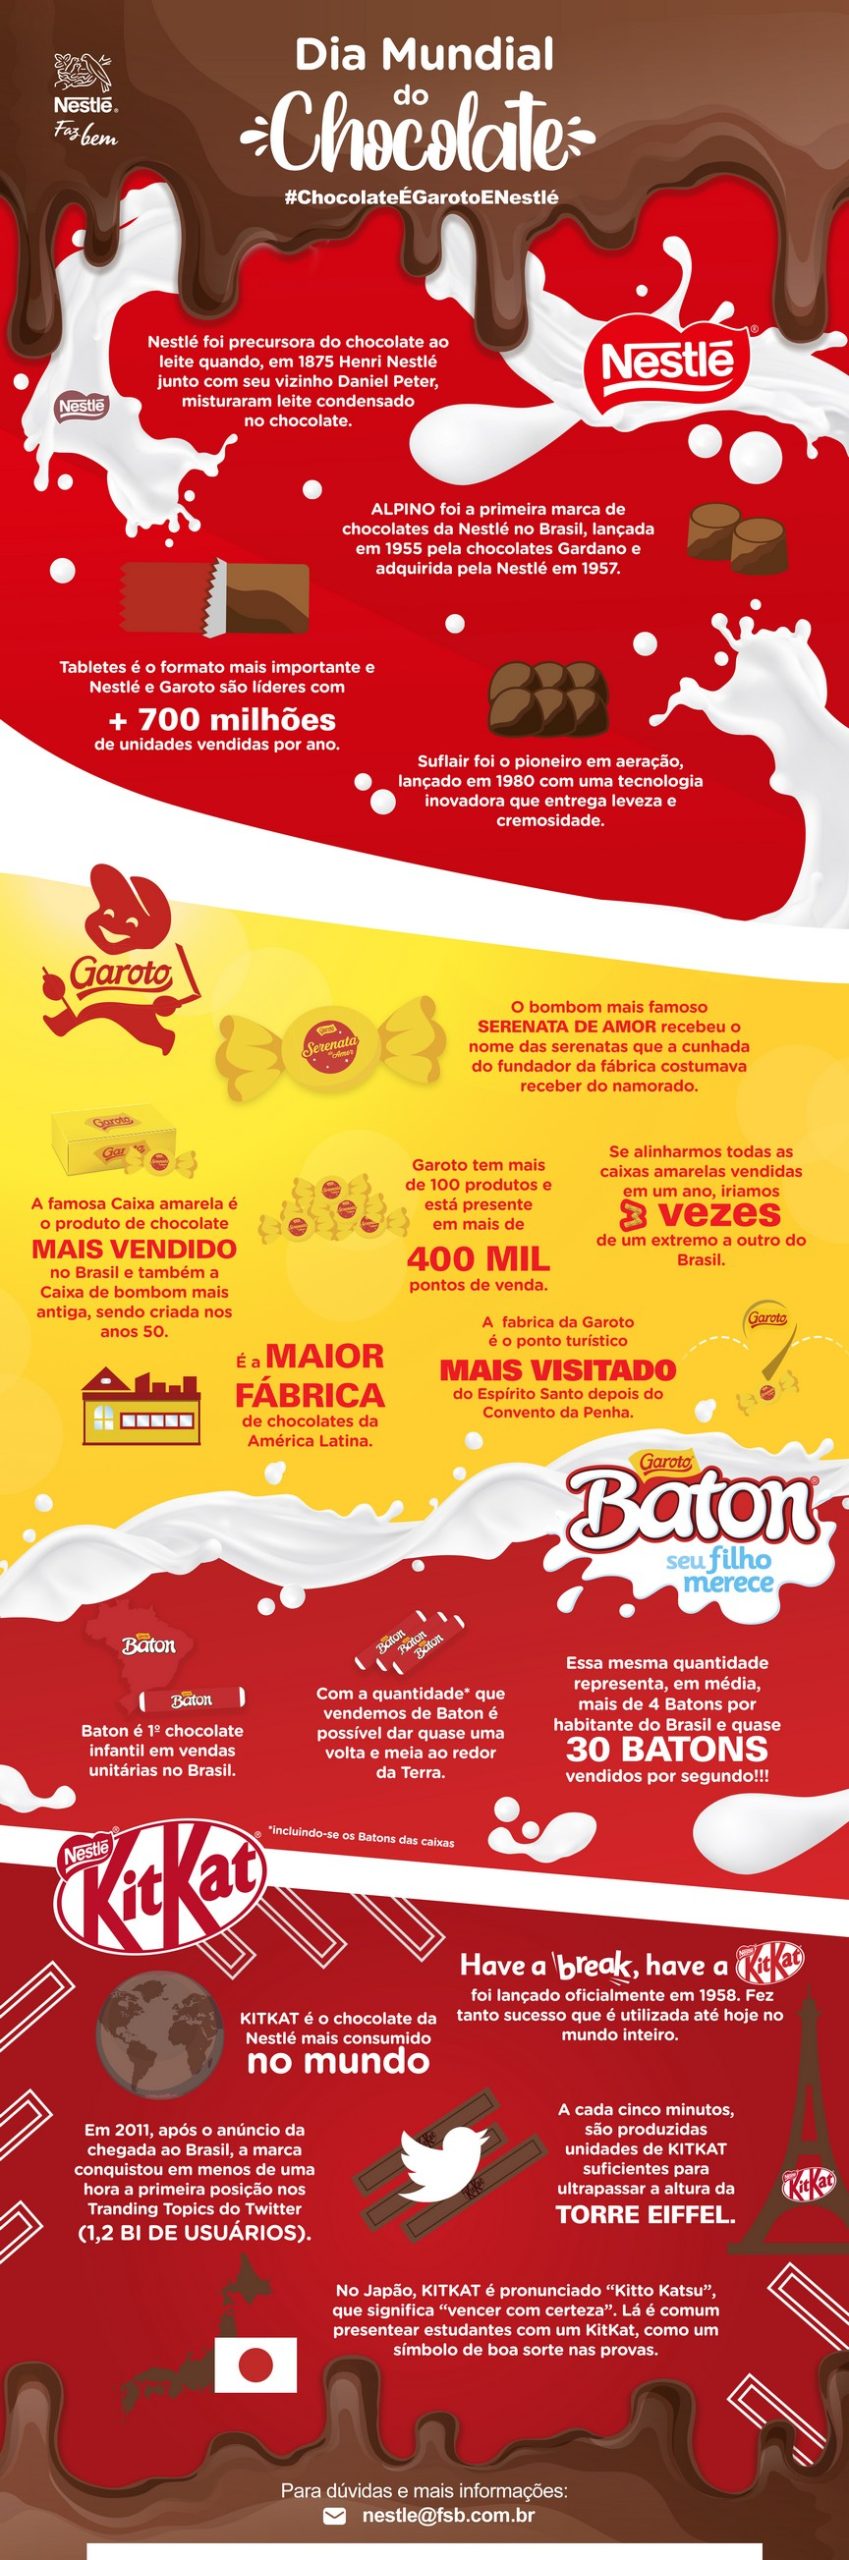 Nestlé lança infográfico com informações curiosas sobre a marca para celebrar o Dia do Chocolate